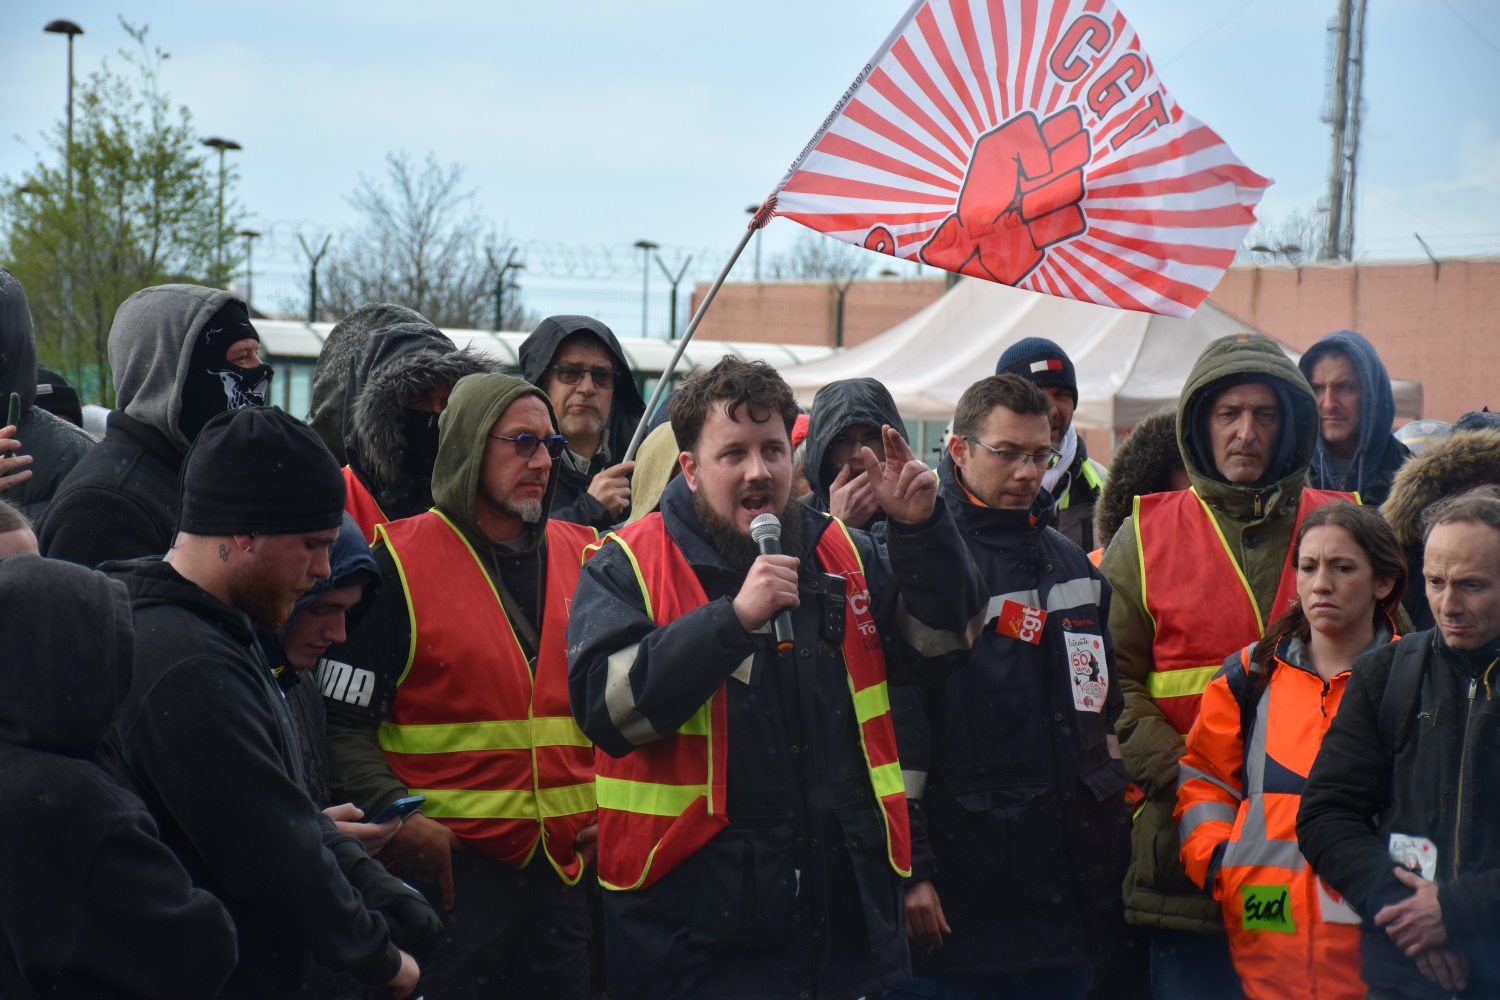 Répression syndicale chez Total : 70% des raffineurs se mettent en grève et font reculer la direction